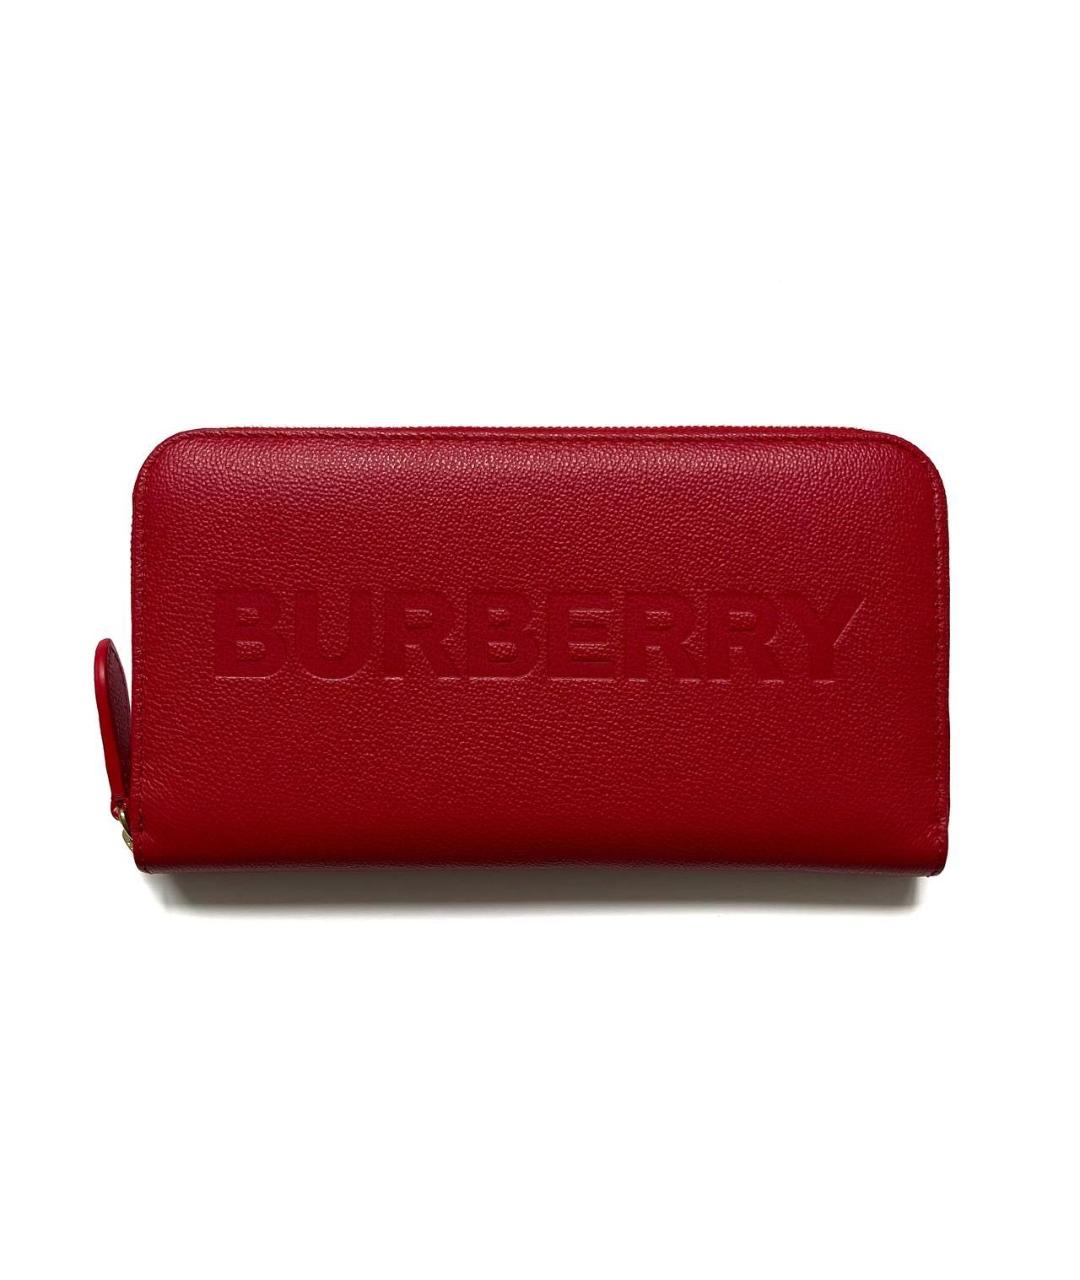 BURBERRY Красный кожаный кошелек, фото 1